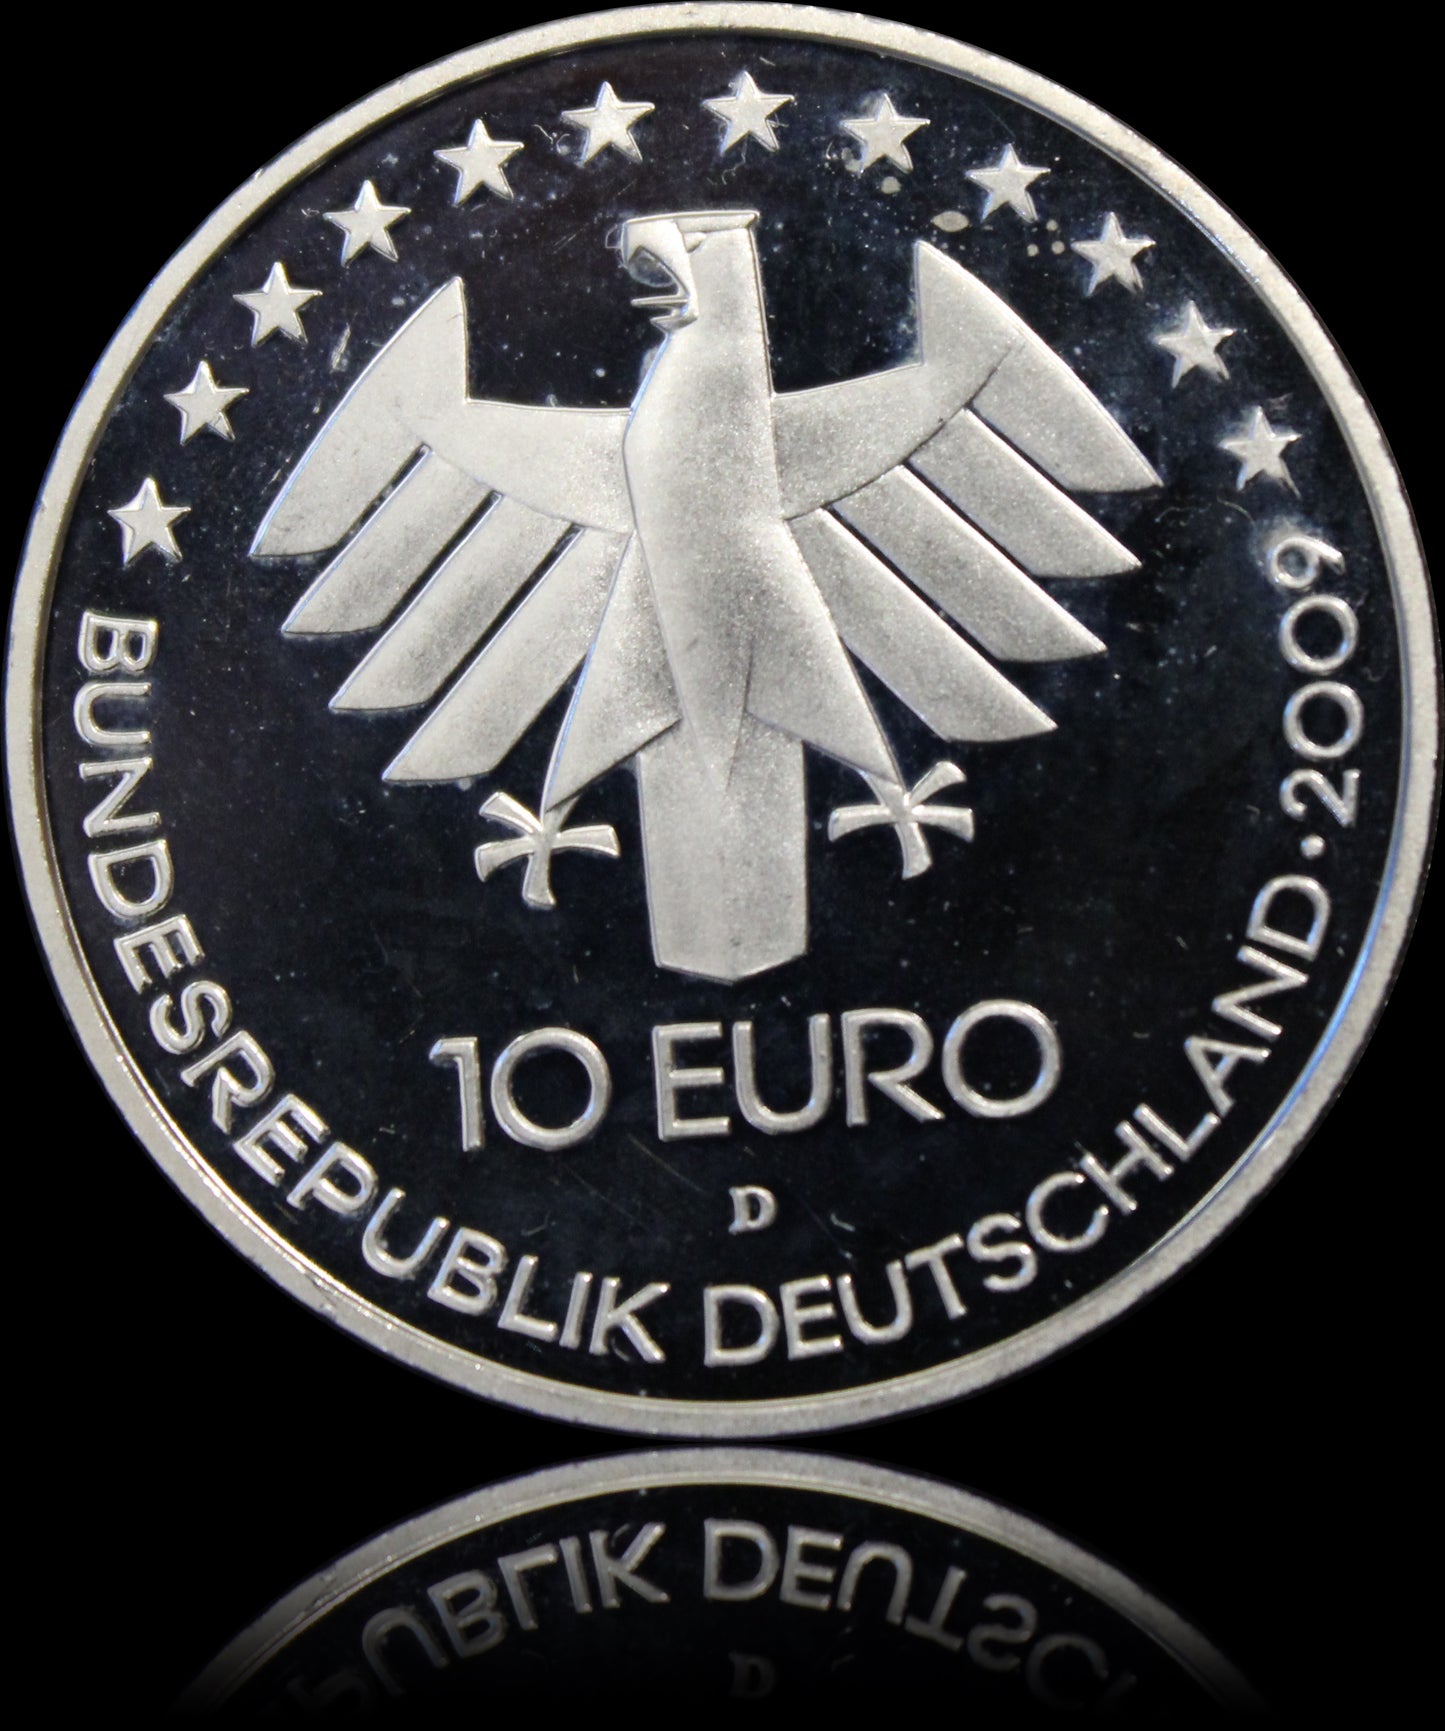 100 JAHRE INTERNATIONALE LUFTFAHRTAUSSTELLUNG, Serie 10 € Silber Gedenkmünzen Deutschland,Spiegelglanz, 2009